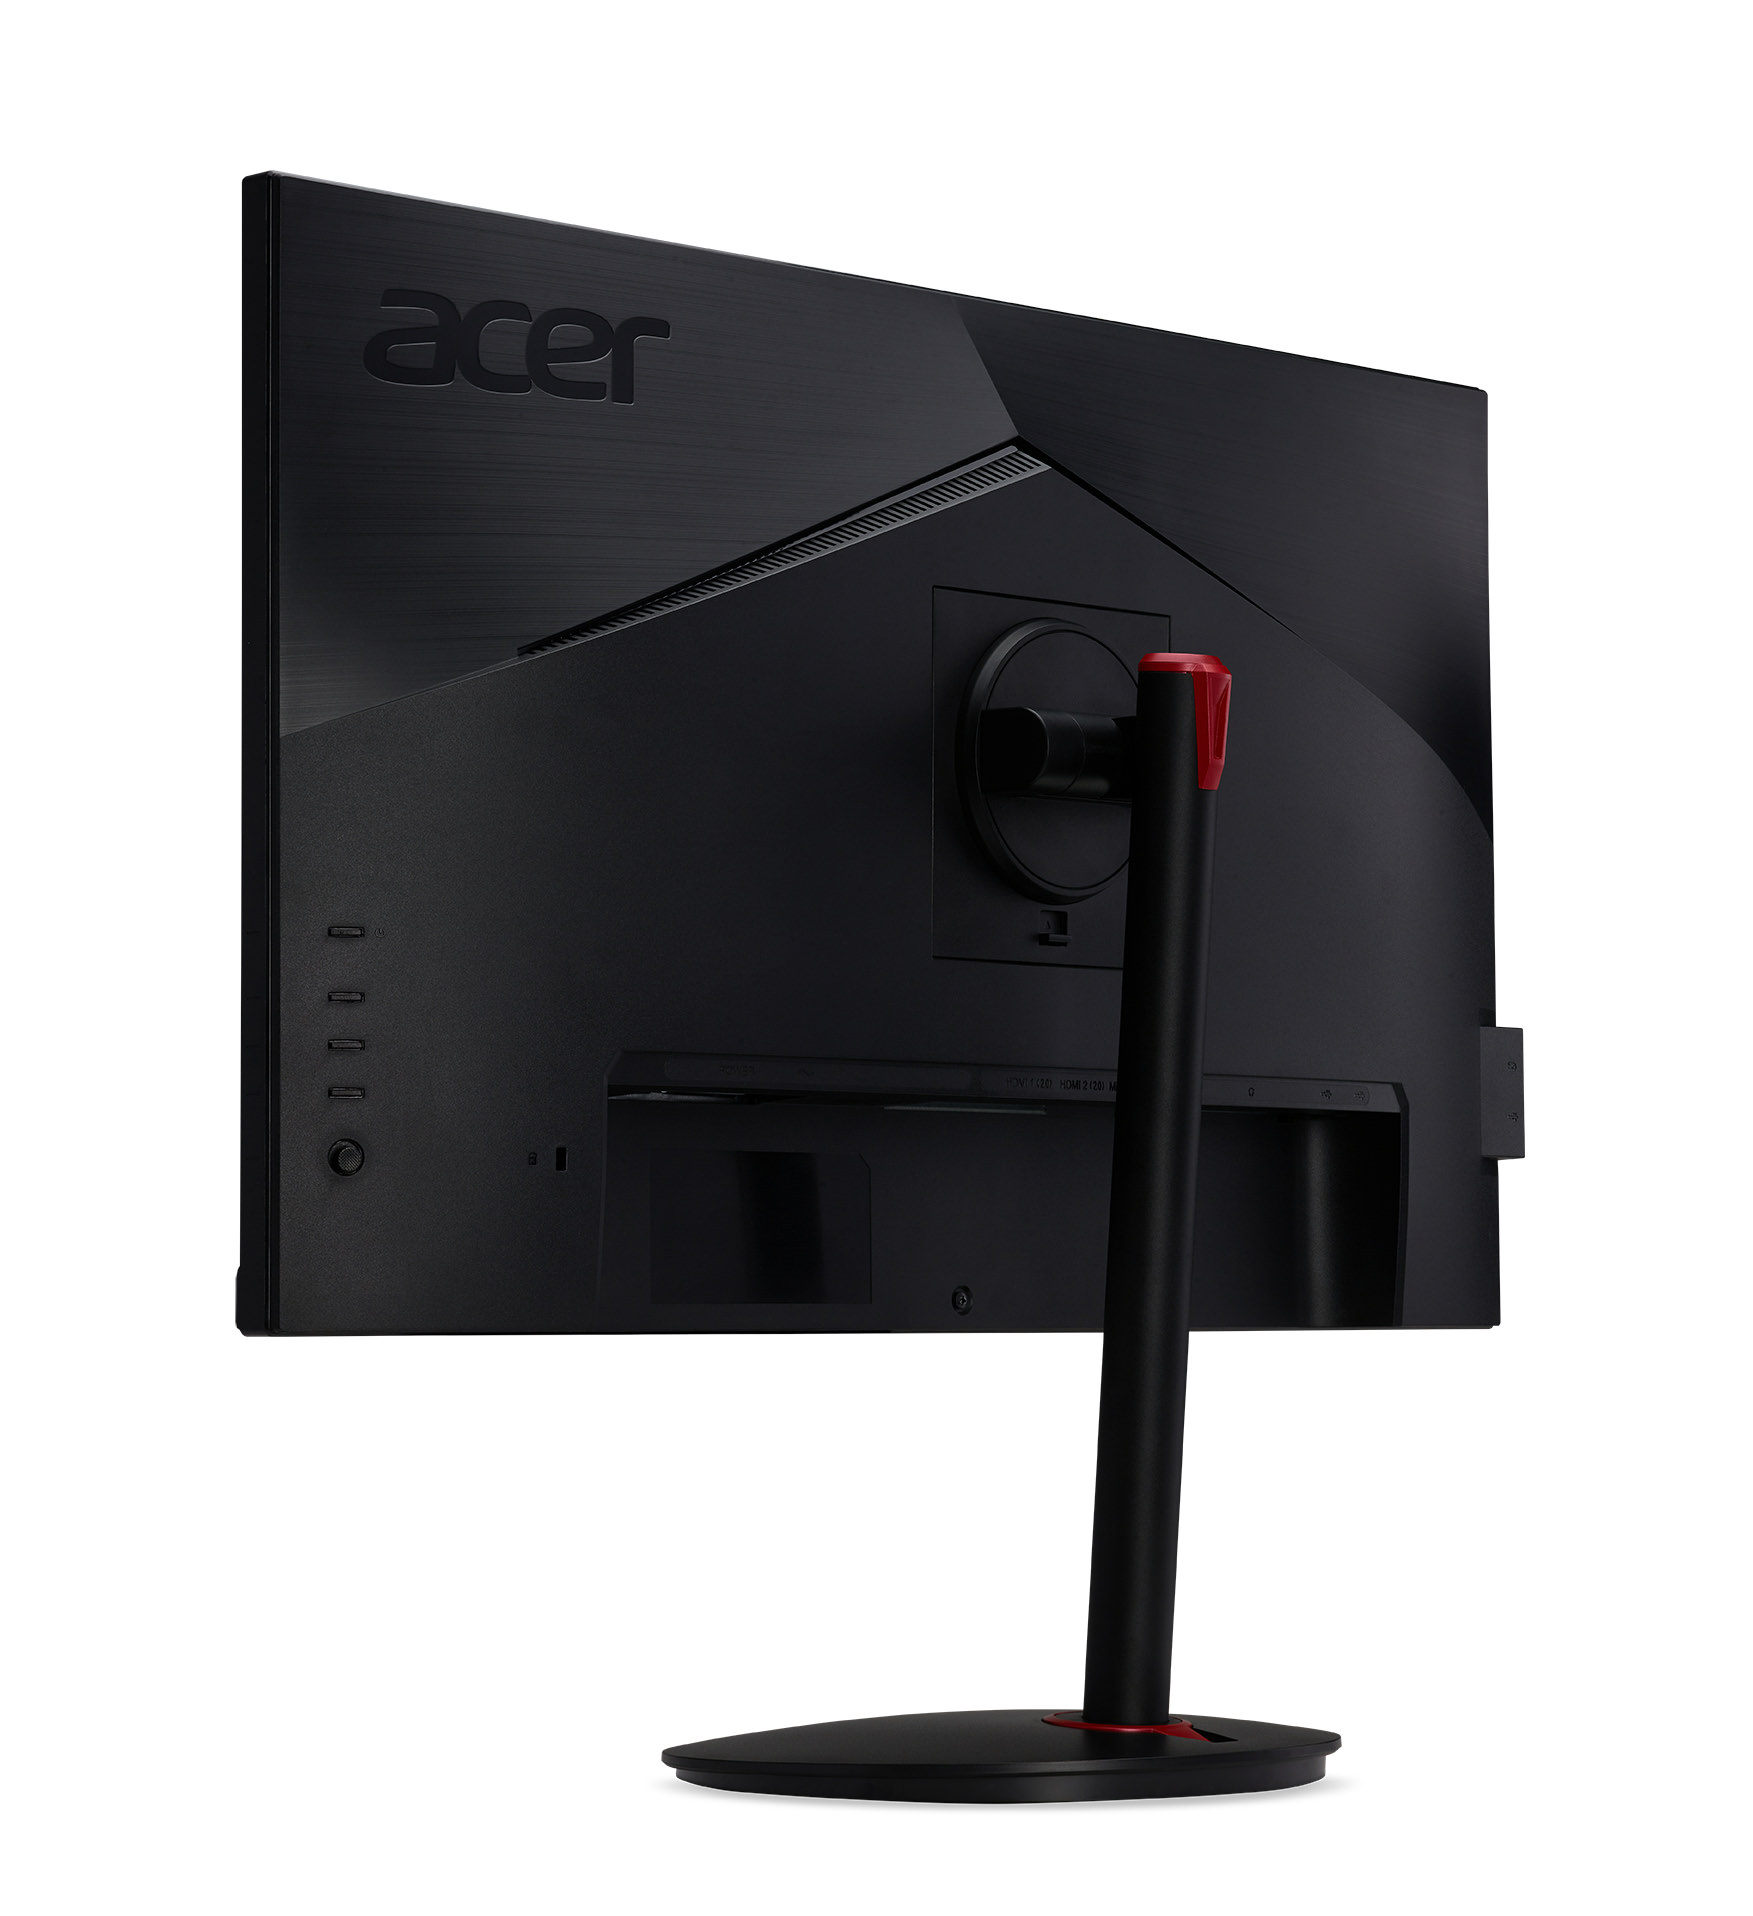 Acer giới thiệu hệ sinh thái màn hình gaming dành cho game thủ